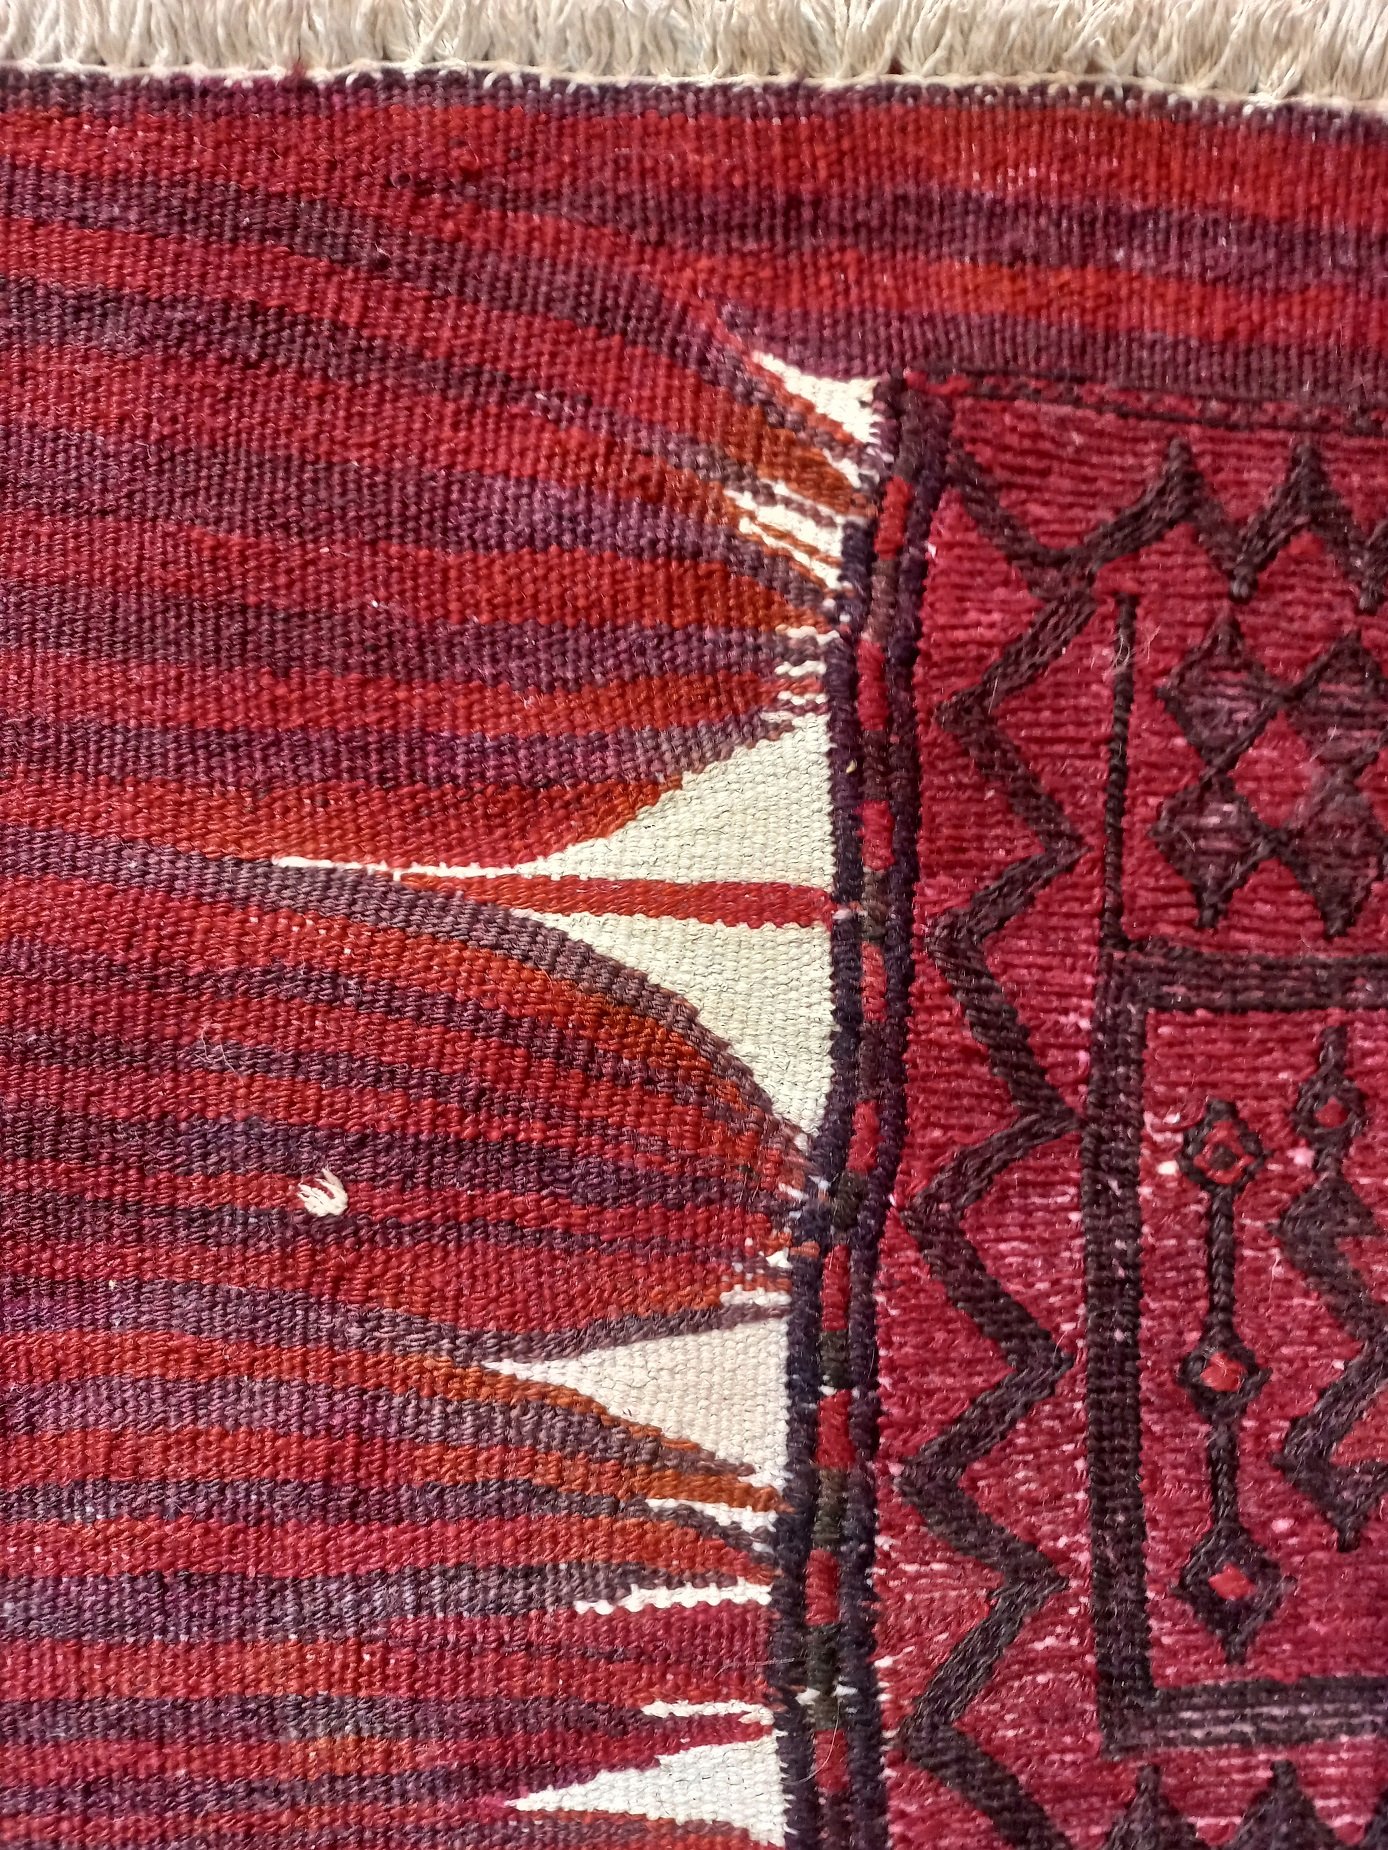 שטיח טורקי לאחר תיקון גלישות צבעים